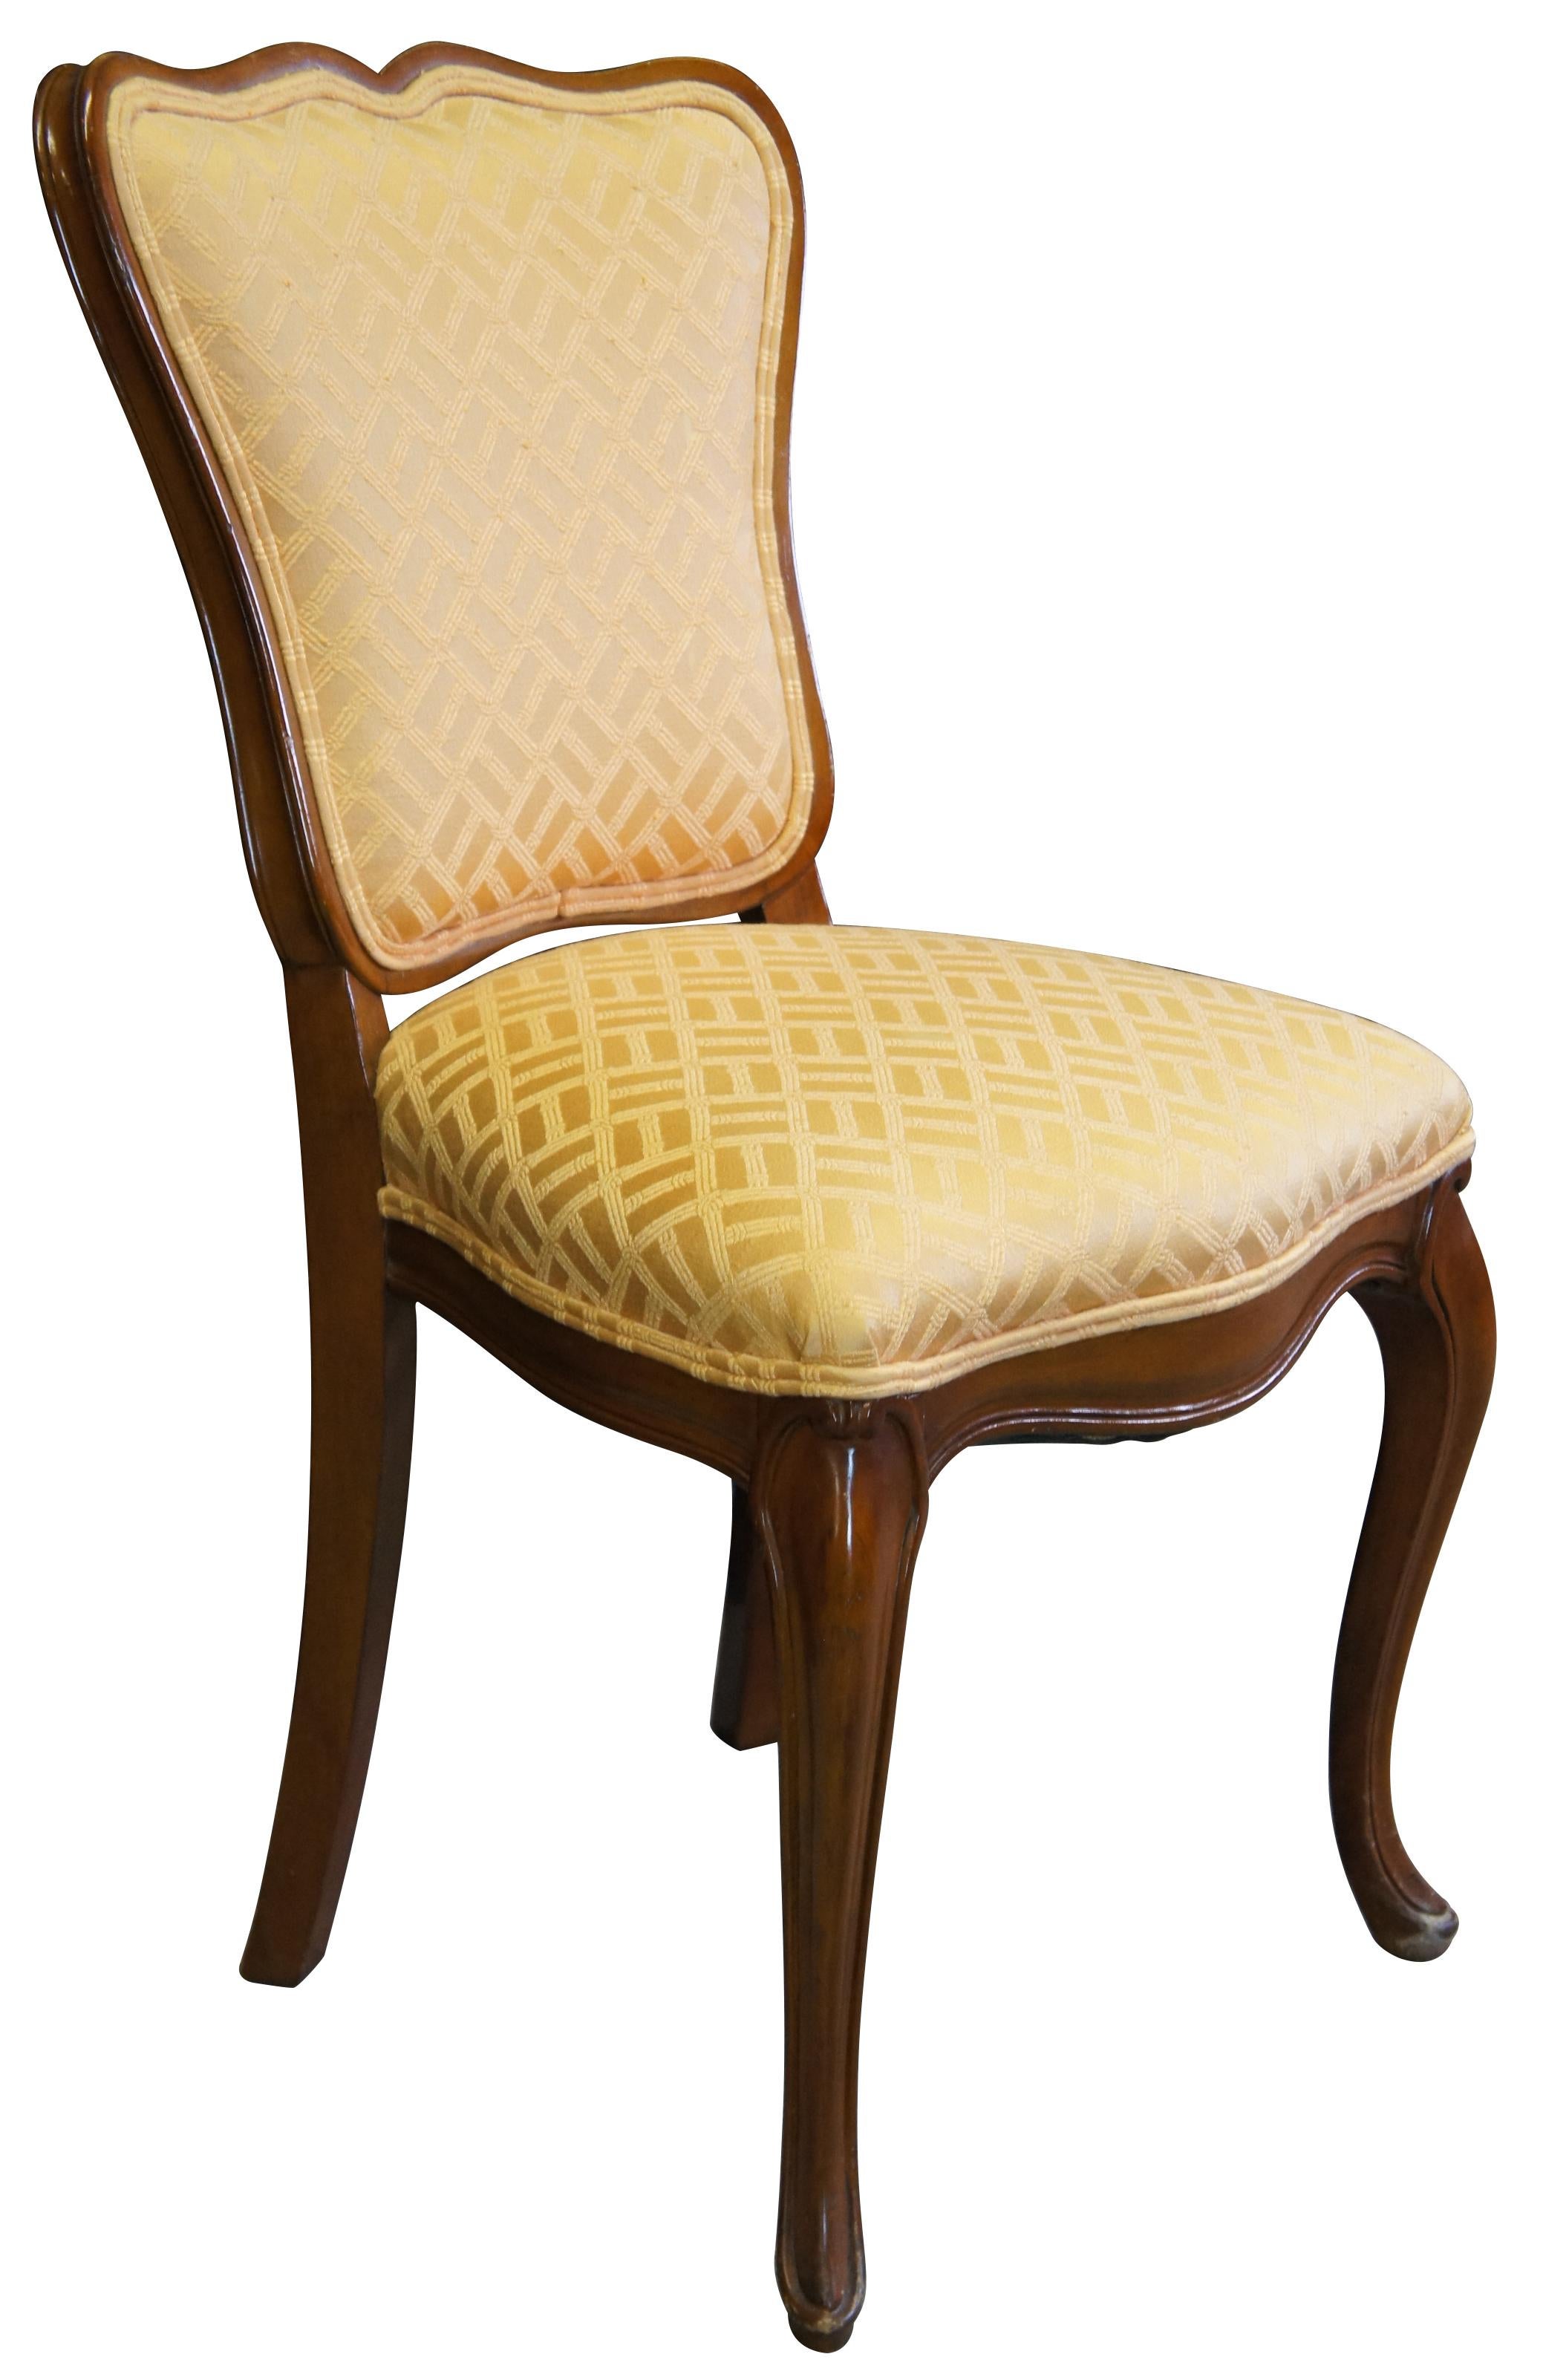 1950er Globe Möbel Kolonie Gericht Akzent Stuhl. Französisch inspiriert mit Nussbaum-Finish. Mit schlangenförmiger Kammschiene, goldenem Stoff im Bambusdesign und Cabriole-Beinen. Globe Furniture wurde 1906 eröffnet und hatte seinen Sitz in